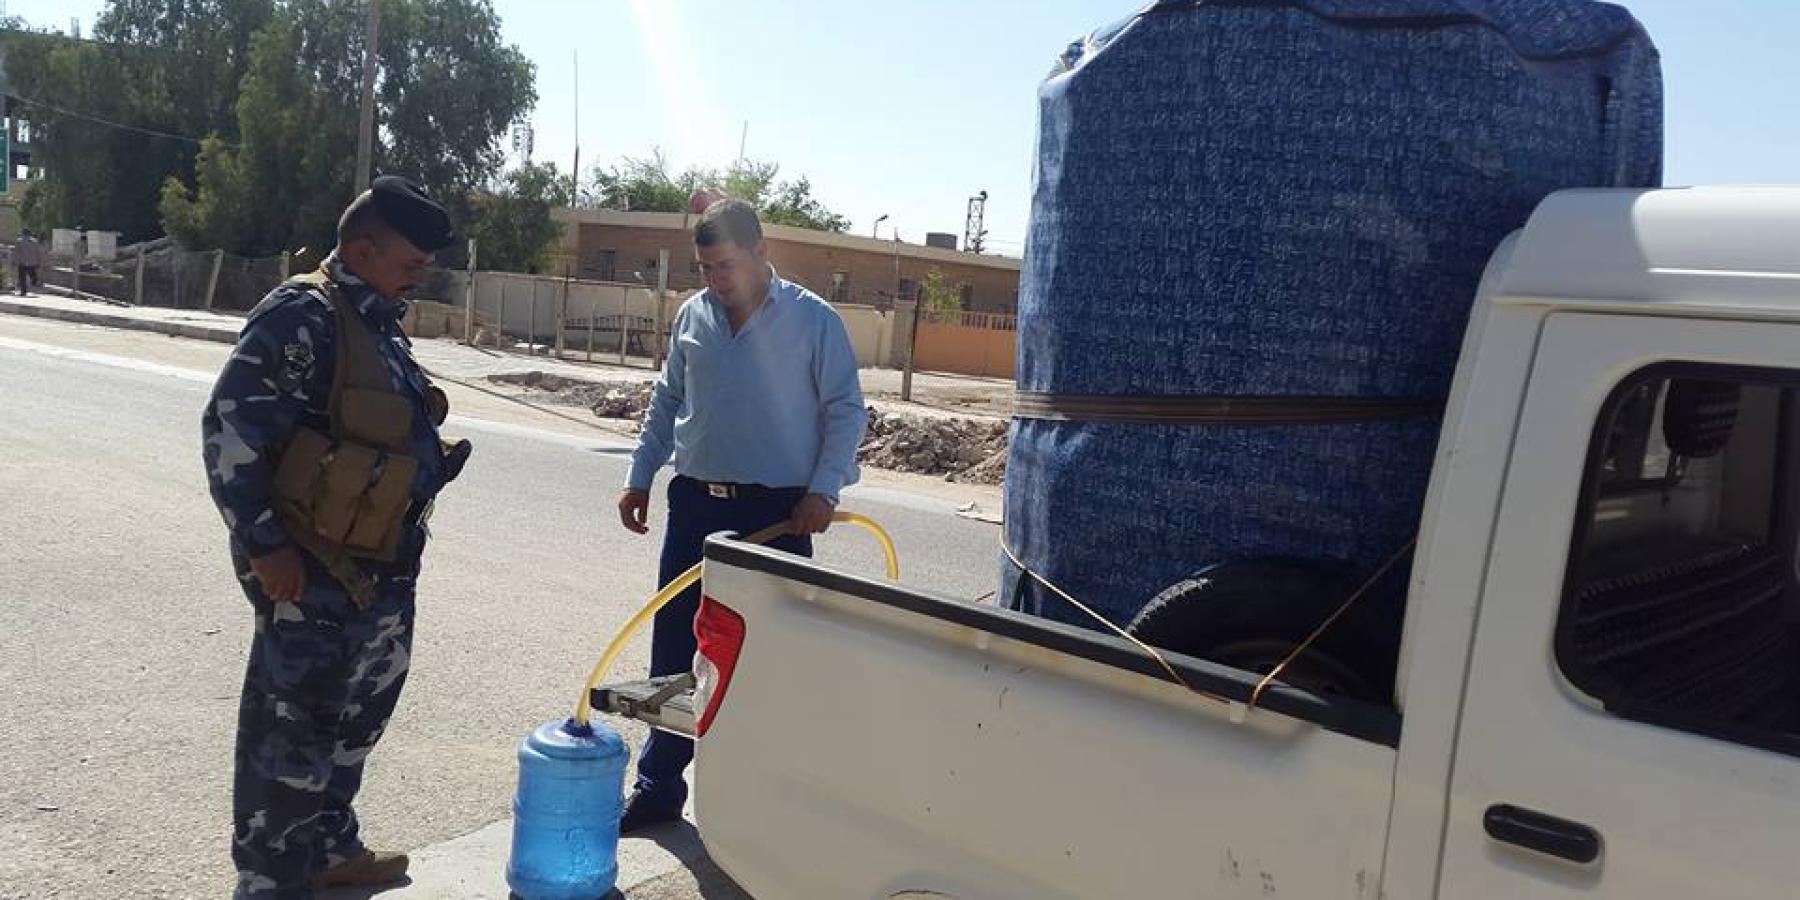 العتبة العلوية المقدسة تقوم بتوزيع المياه النقية الباردة لأكثر من 250 نقطة خدمية في محافظة النجف الأشرف  